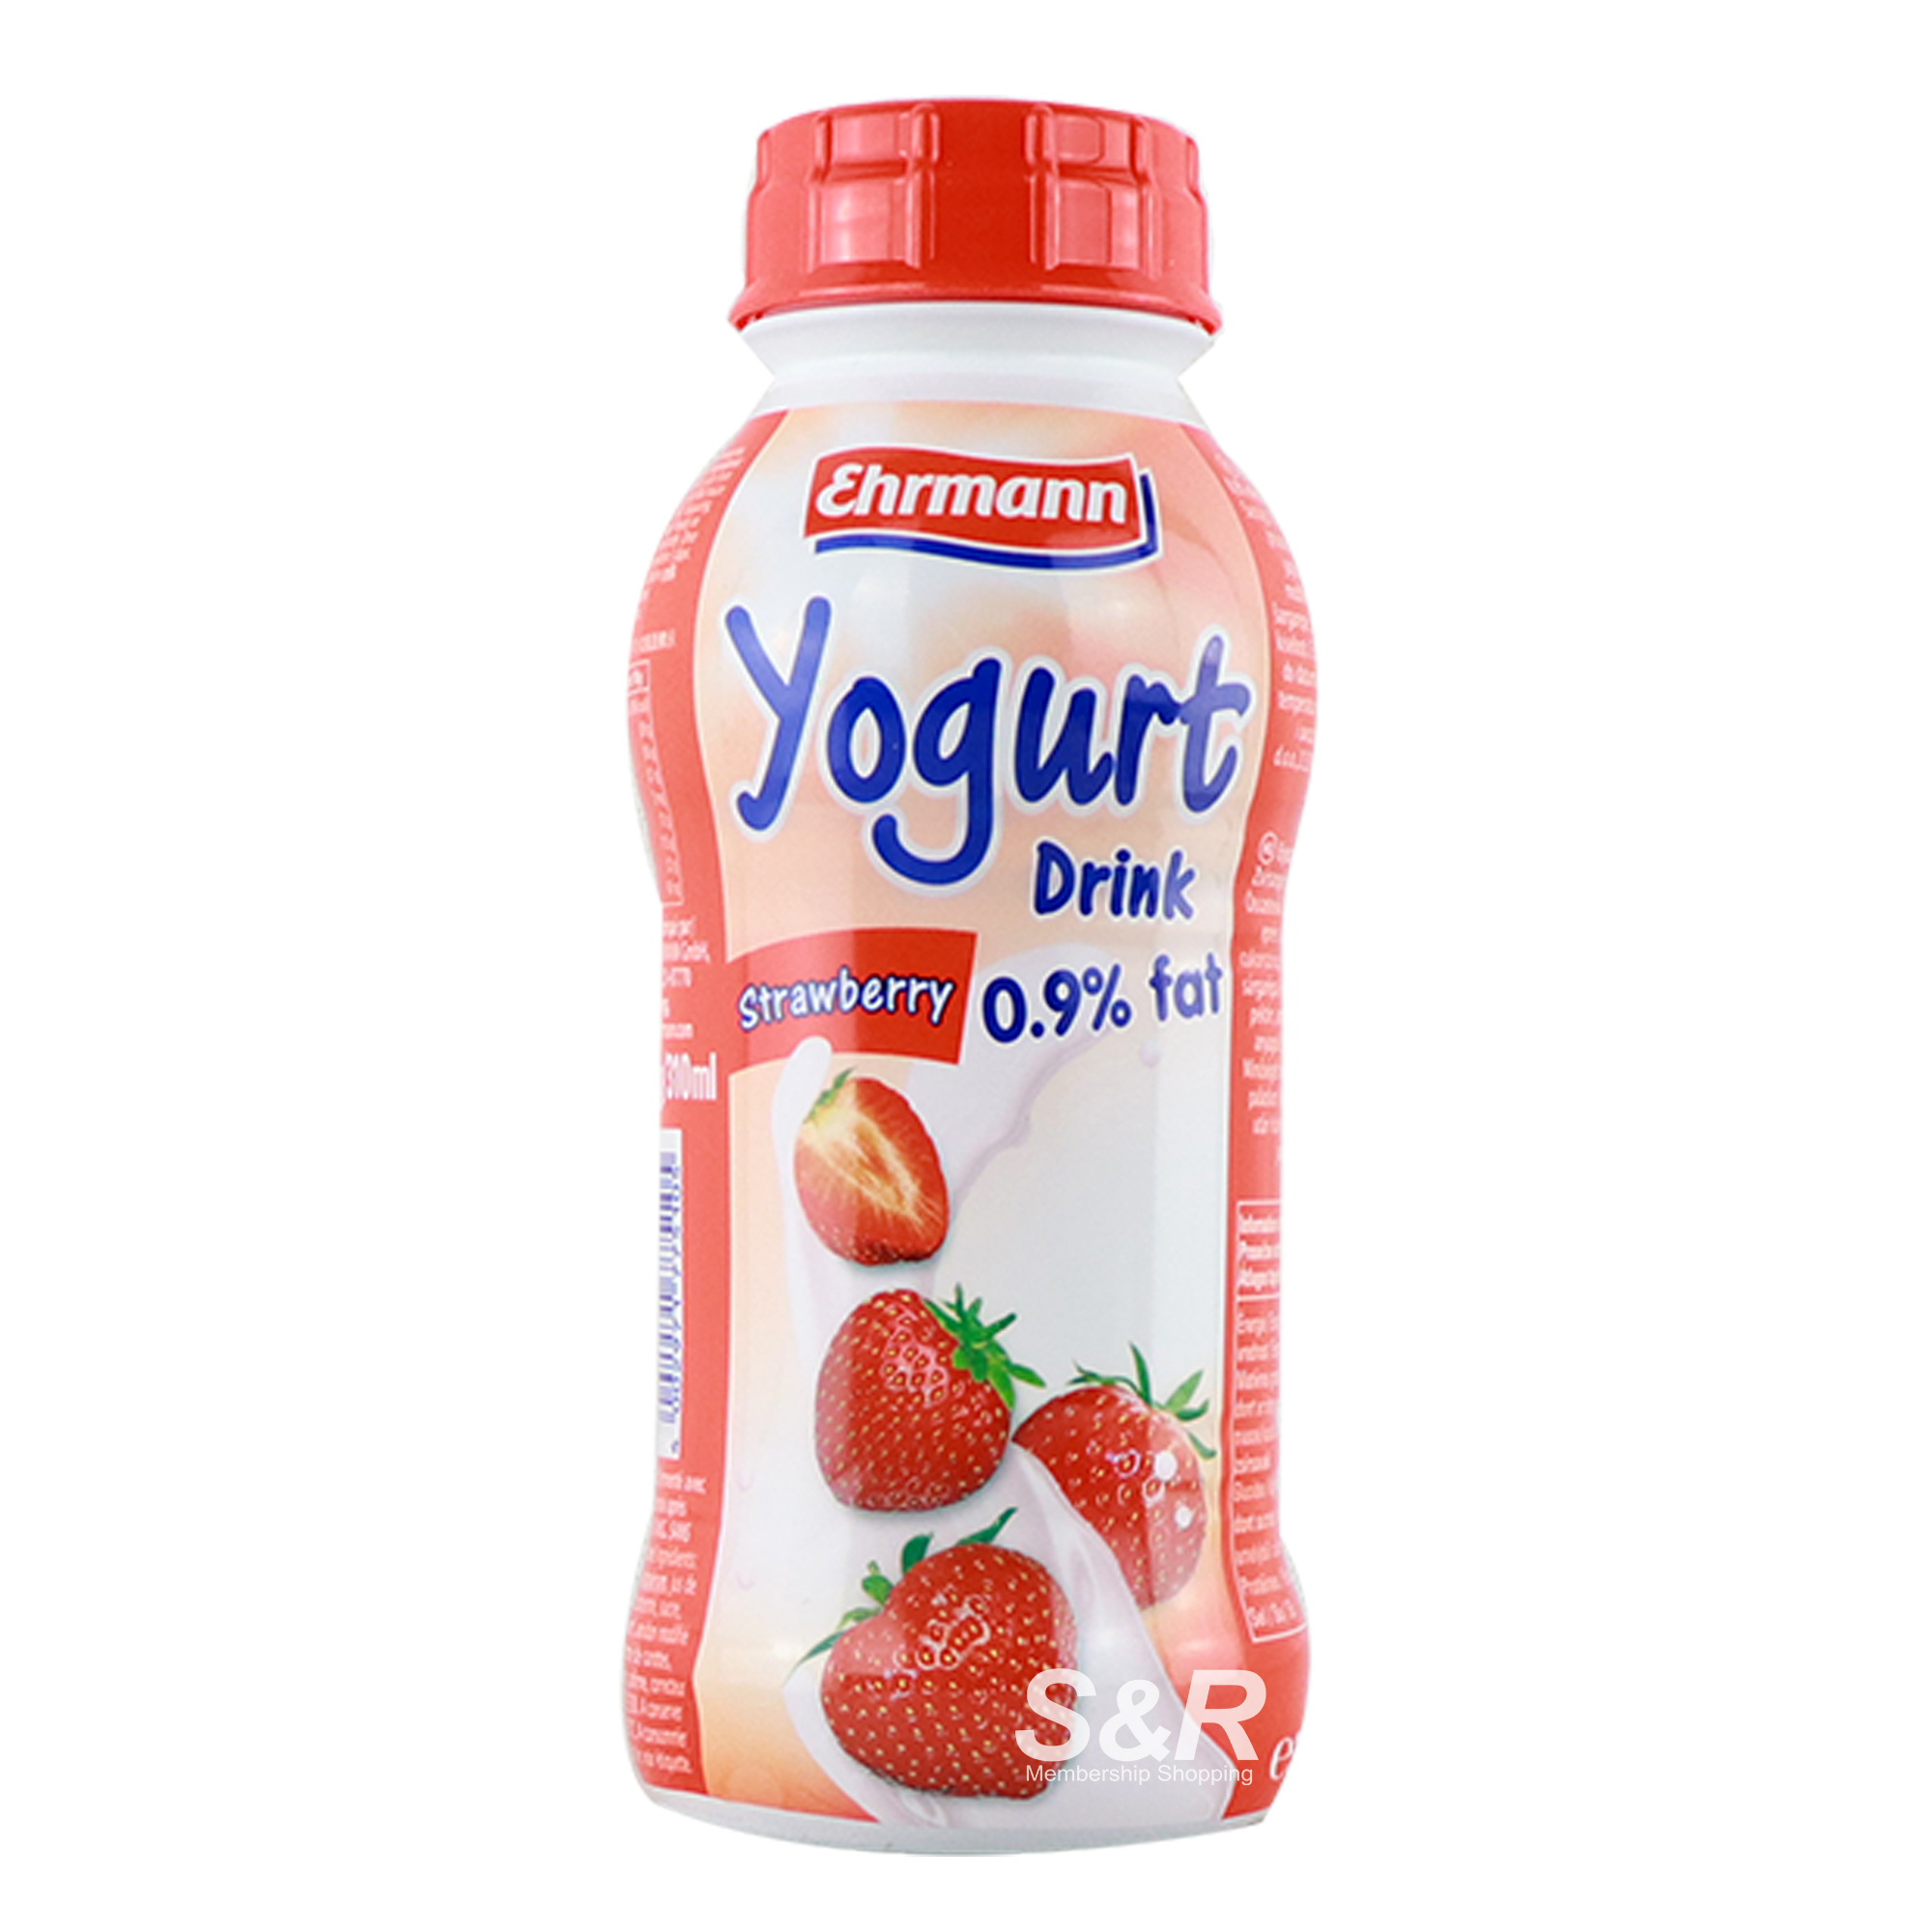 Ehrmann Yogurt Drink Strawberry Flavor 330mL